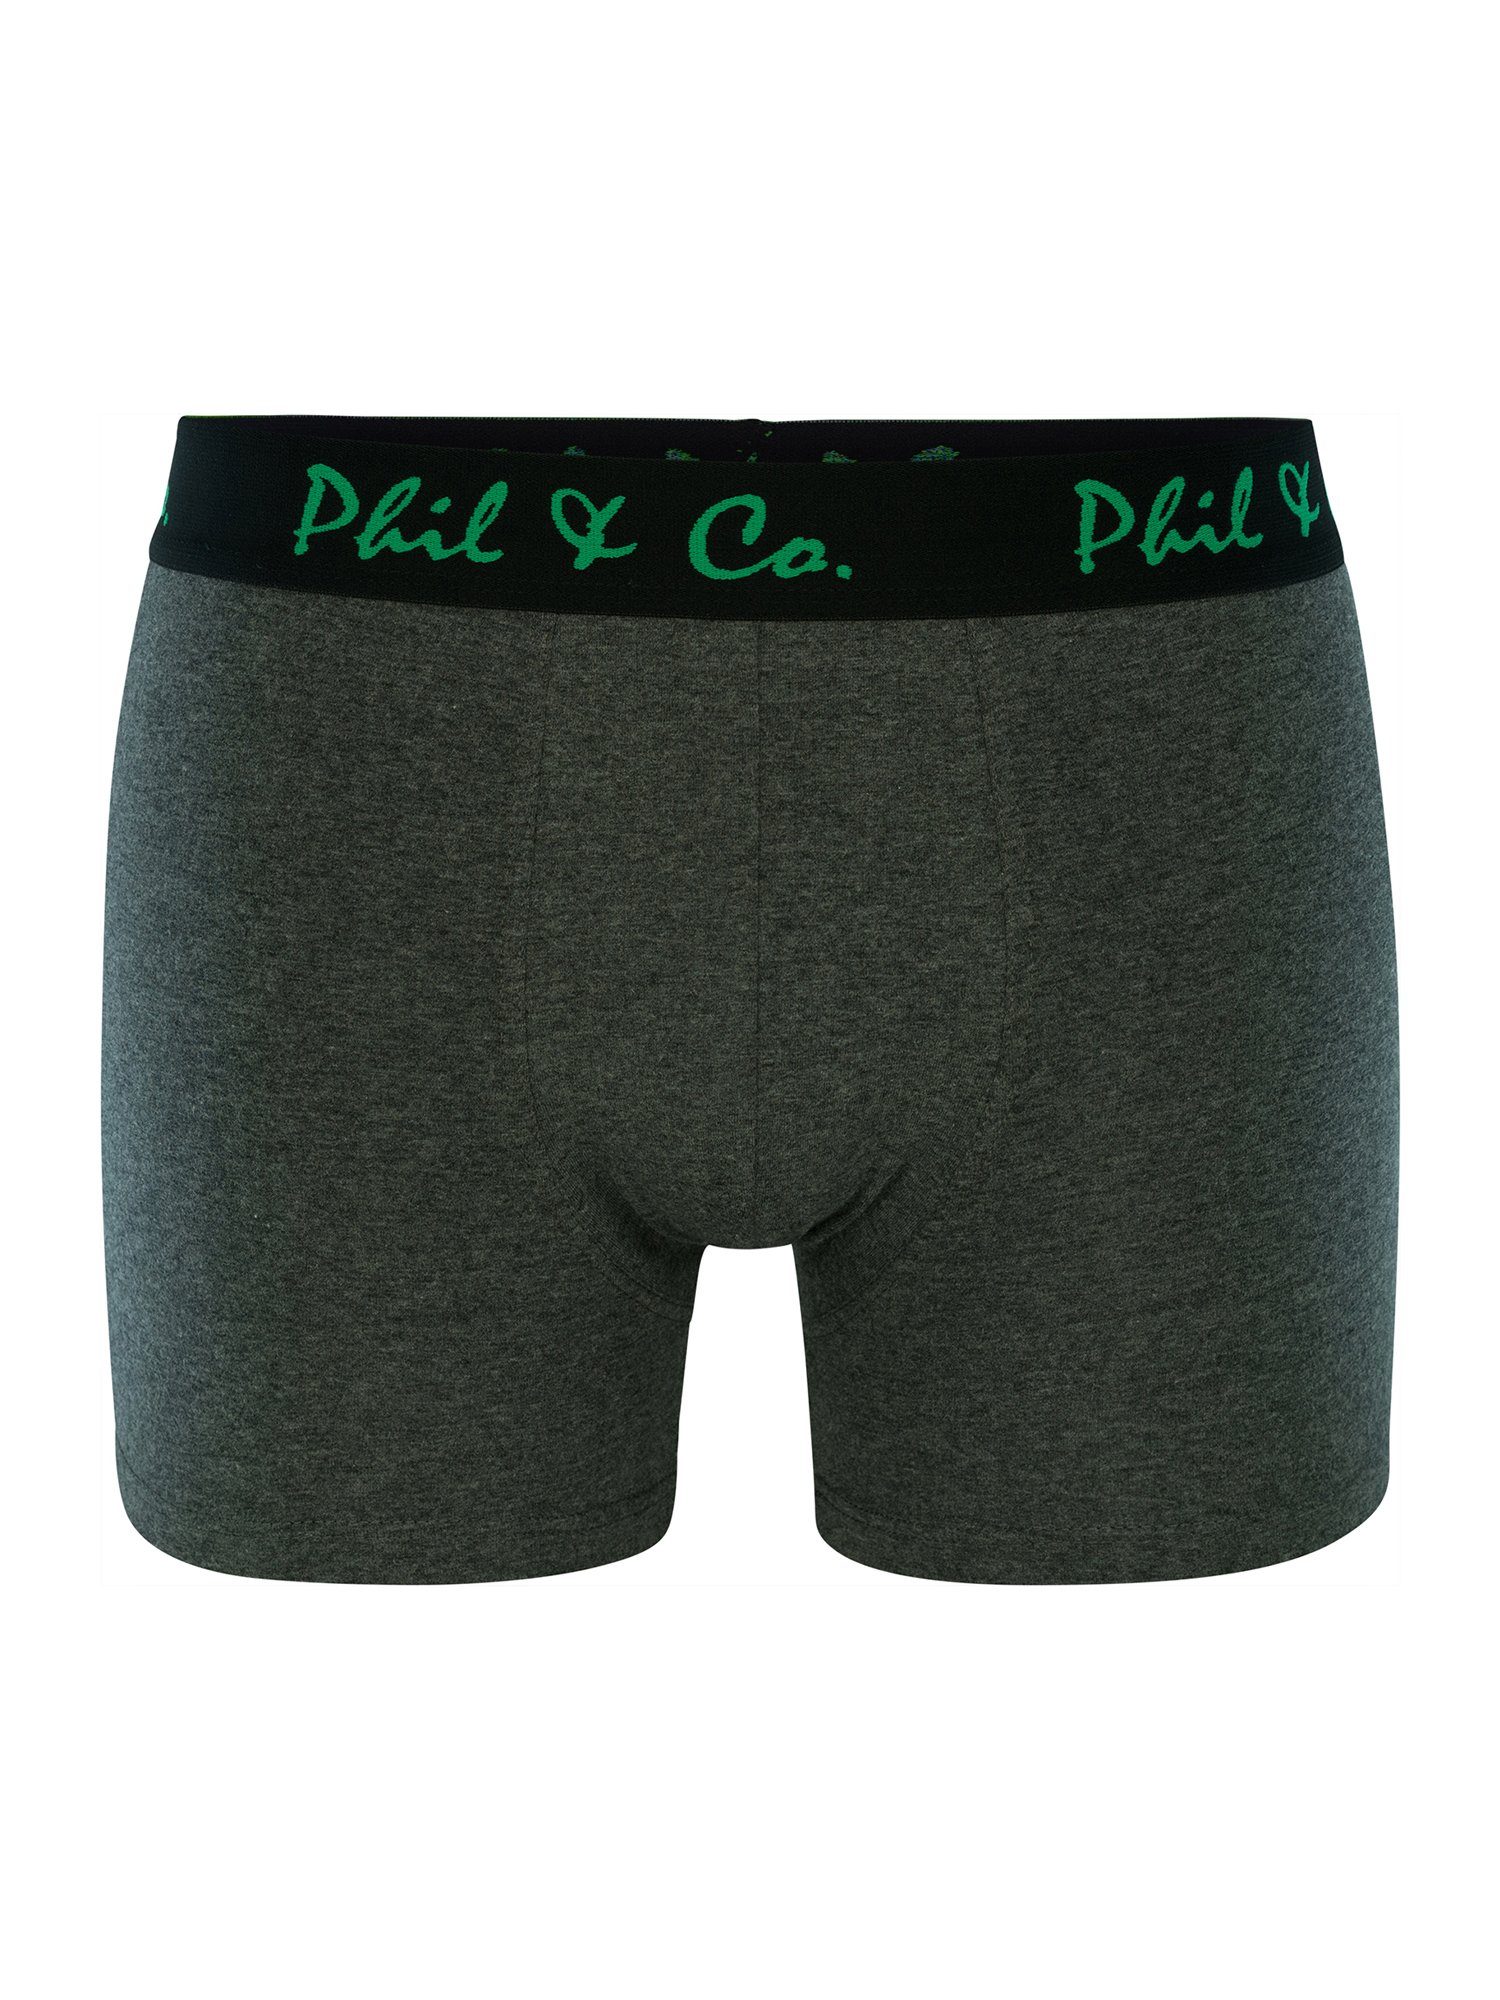 Phil & (4-St) Co. Jersey Retro grün-anthrazit Pants